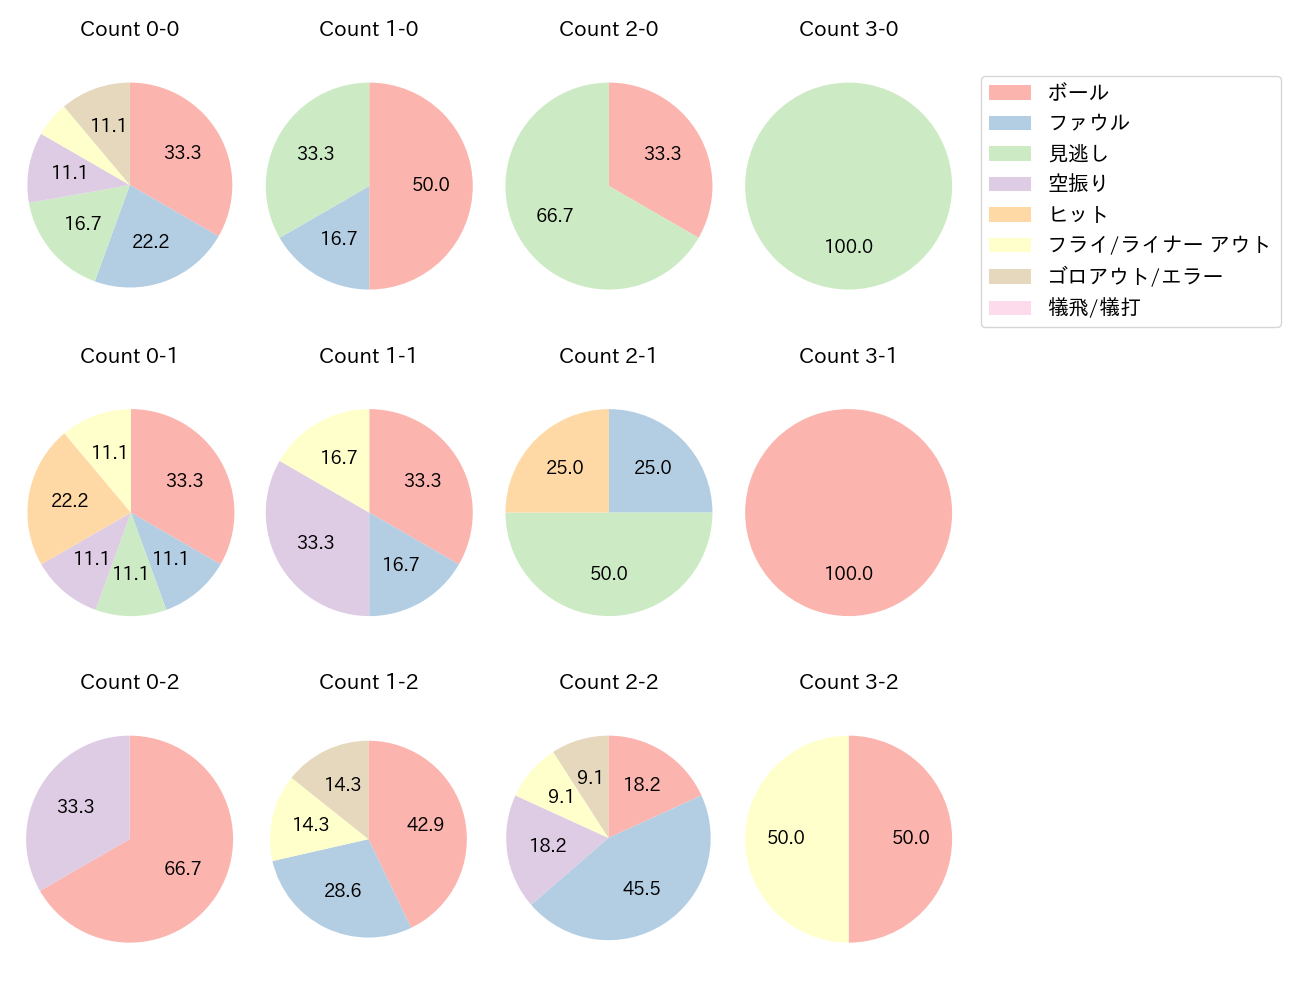 平沢 大河の球数分布(2022年4月)